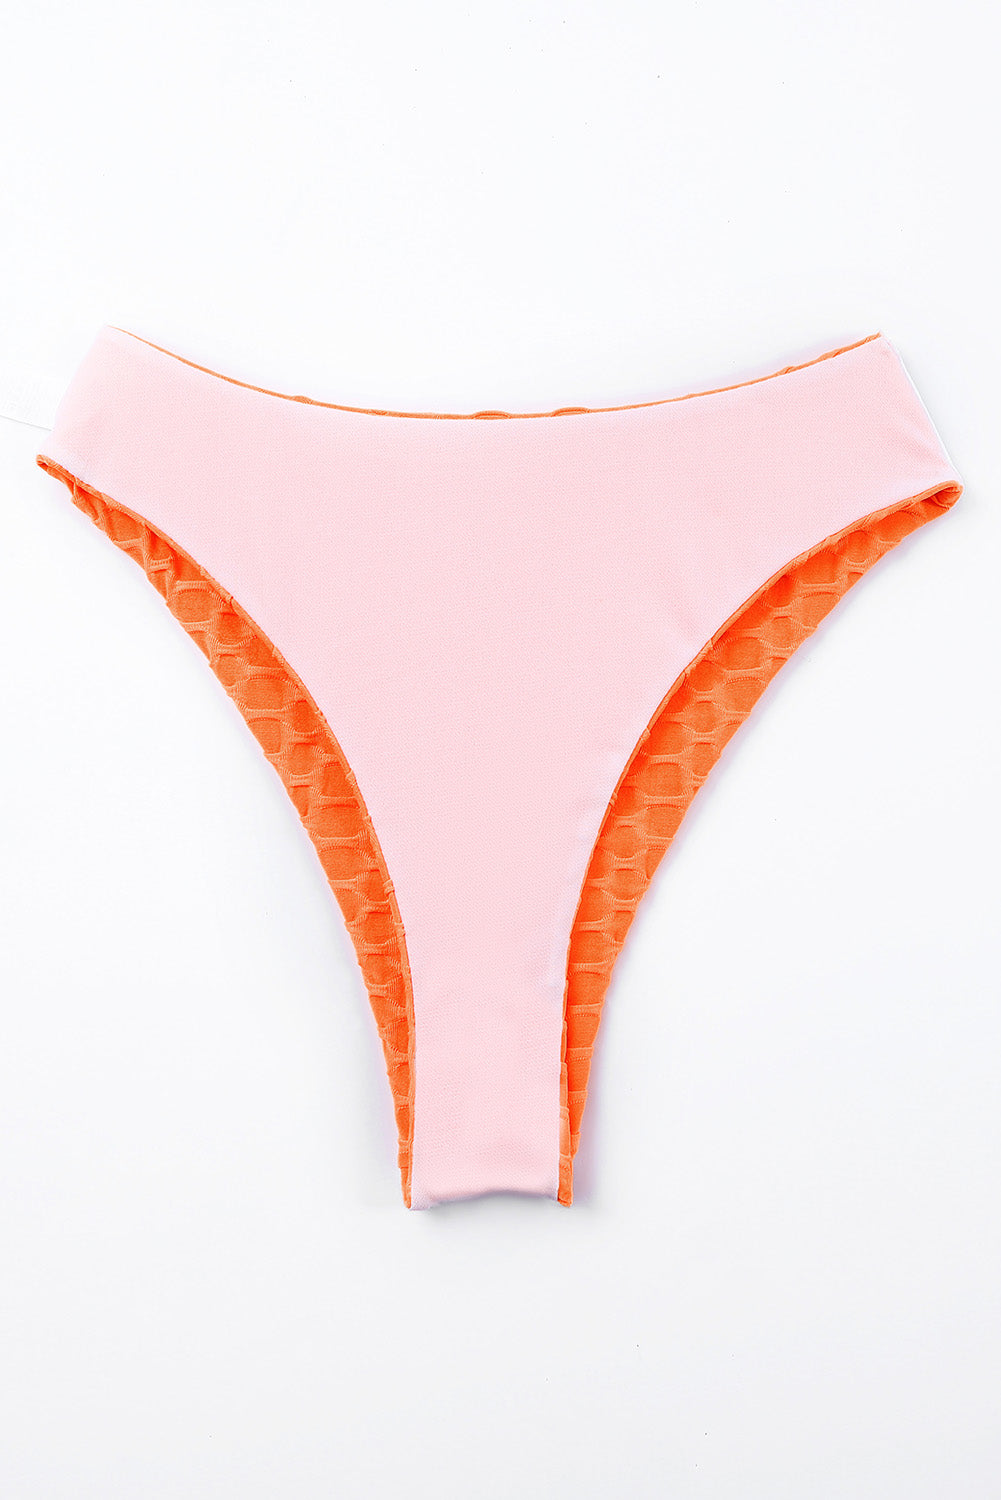 Donji dio bikinija s teksturom narančastog meda